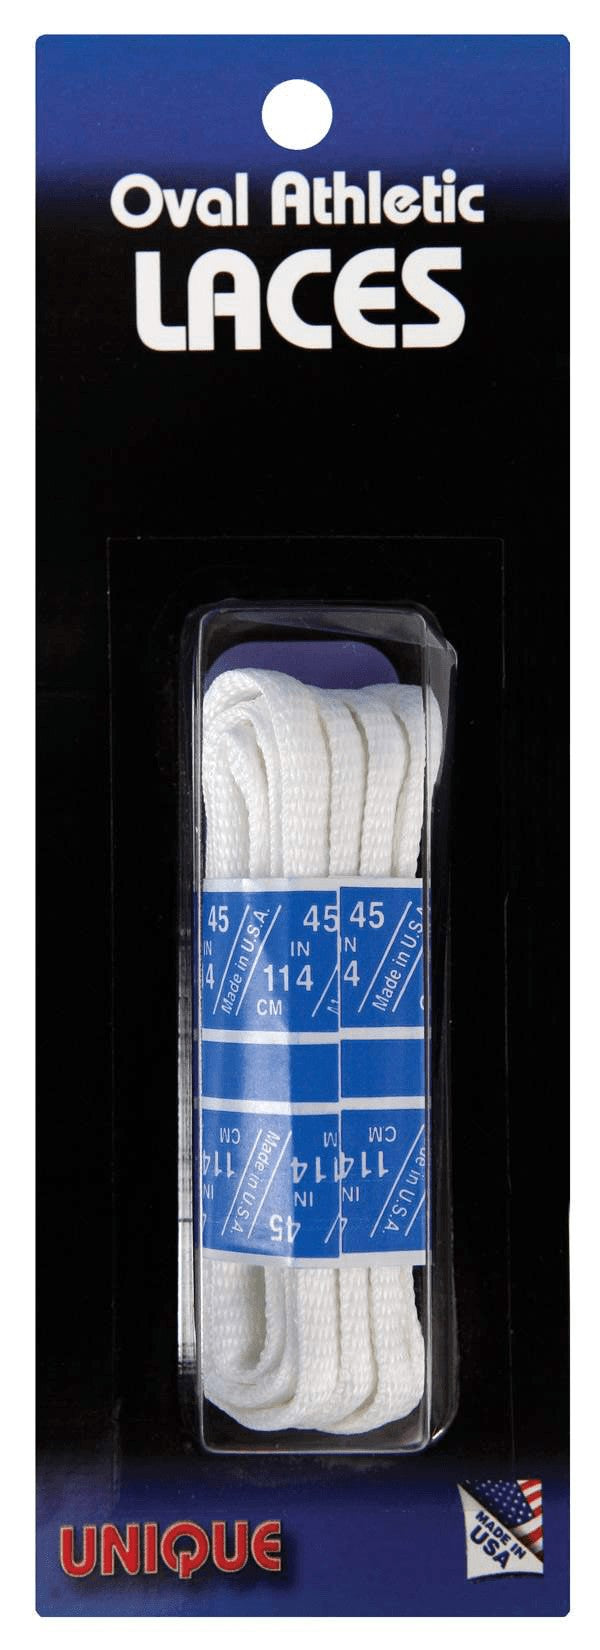 UNIQUE Oval Athletic Shoe Laces - White Racquet Point